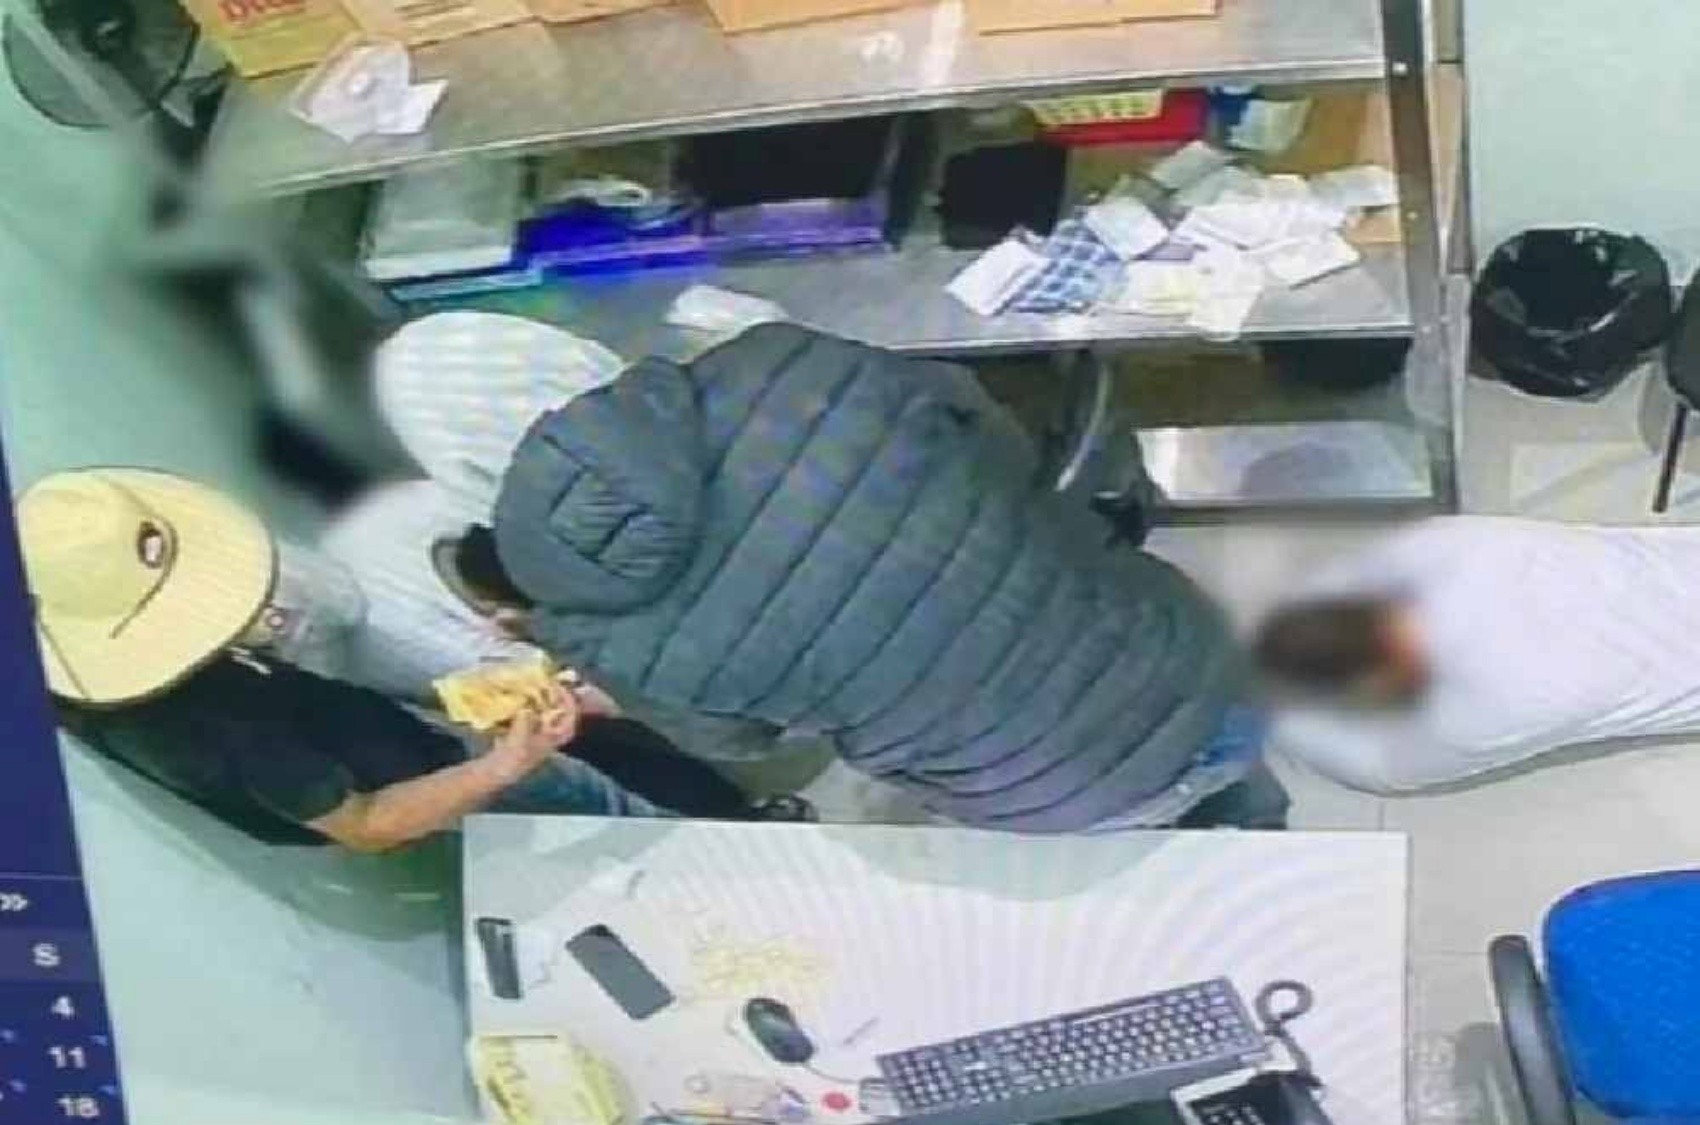 Homens armados rendem funcionários e assaltam supermercado em Pouso Alegre, MG